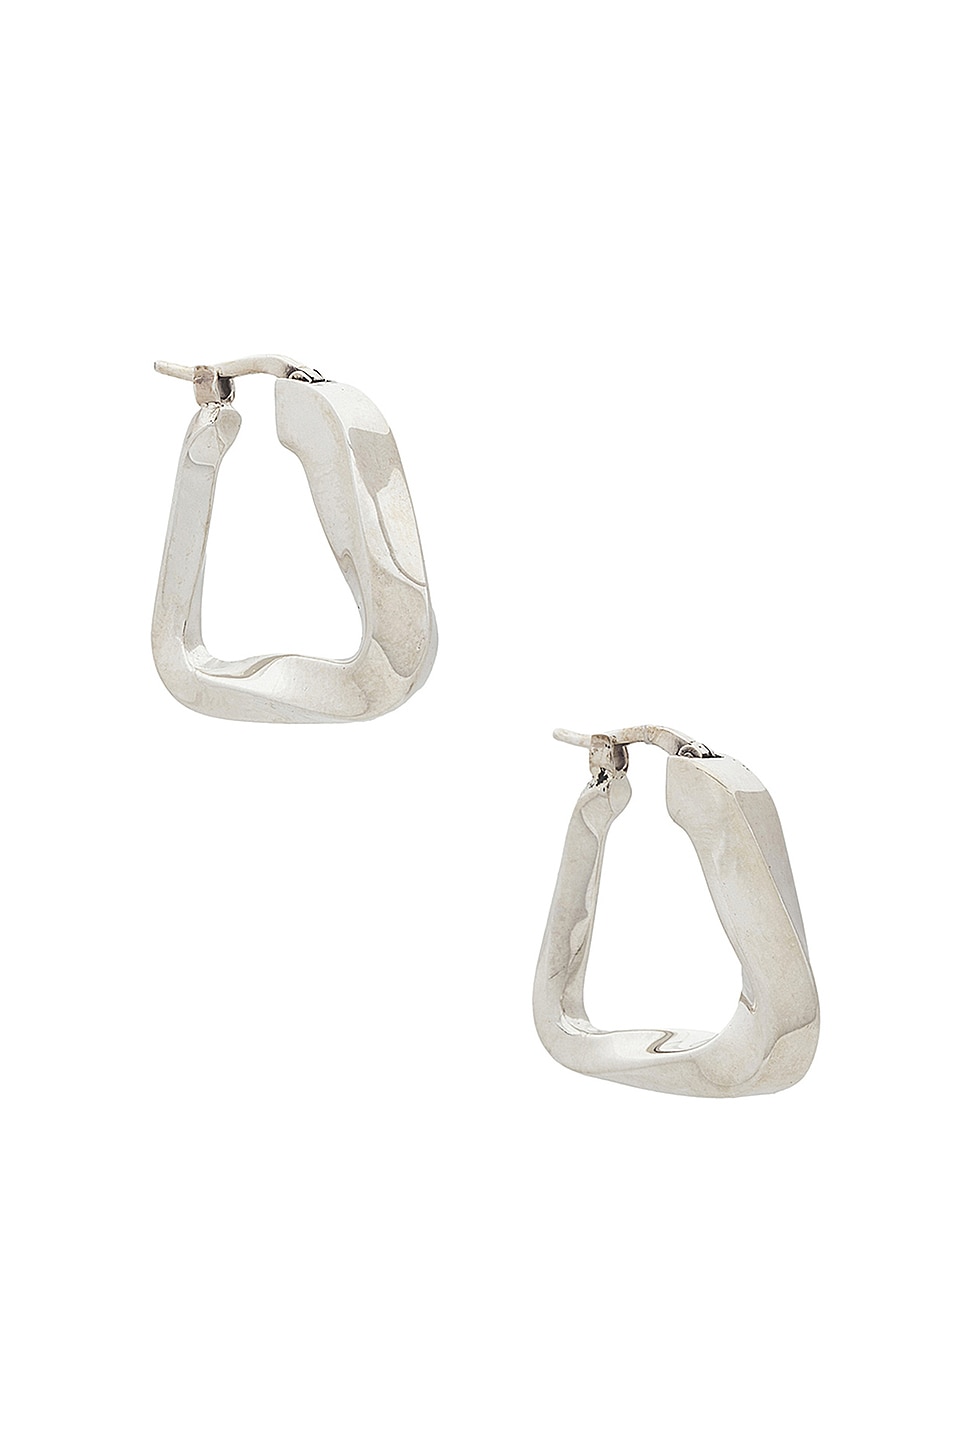 Bottega Veneta Twisted Hoop Earrings in Metallic Silver